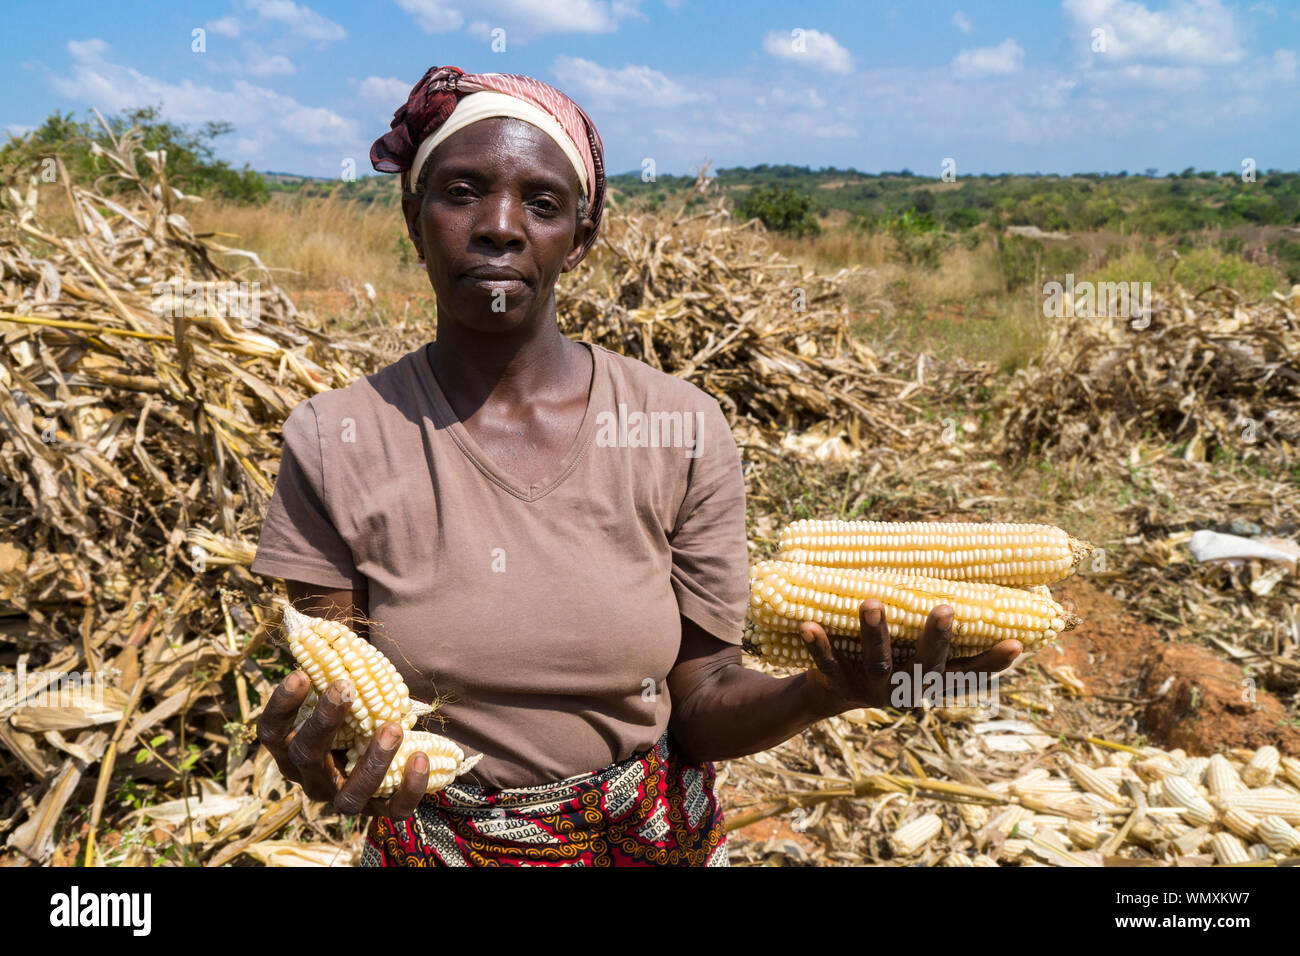 Malawiani femmina agricoltore detiene il confronto delle pannocchie di mais, che mostra la differenza di qualità tra agricoltura conservativa e coltivazione tradizionale. Foto Stock